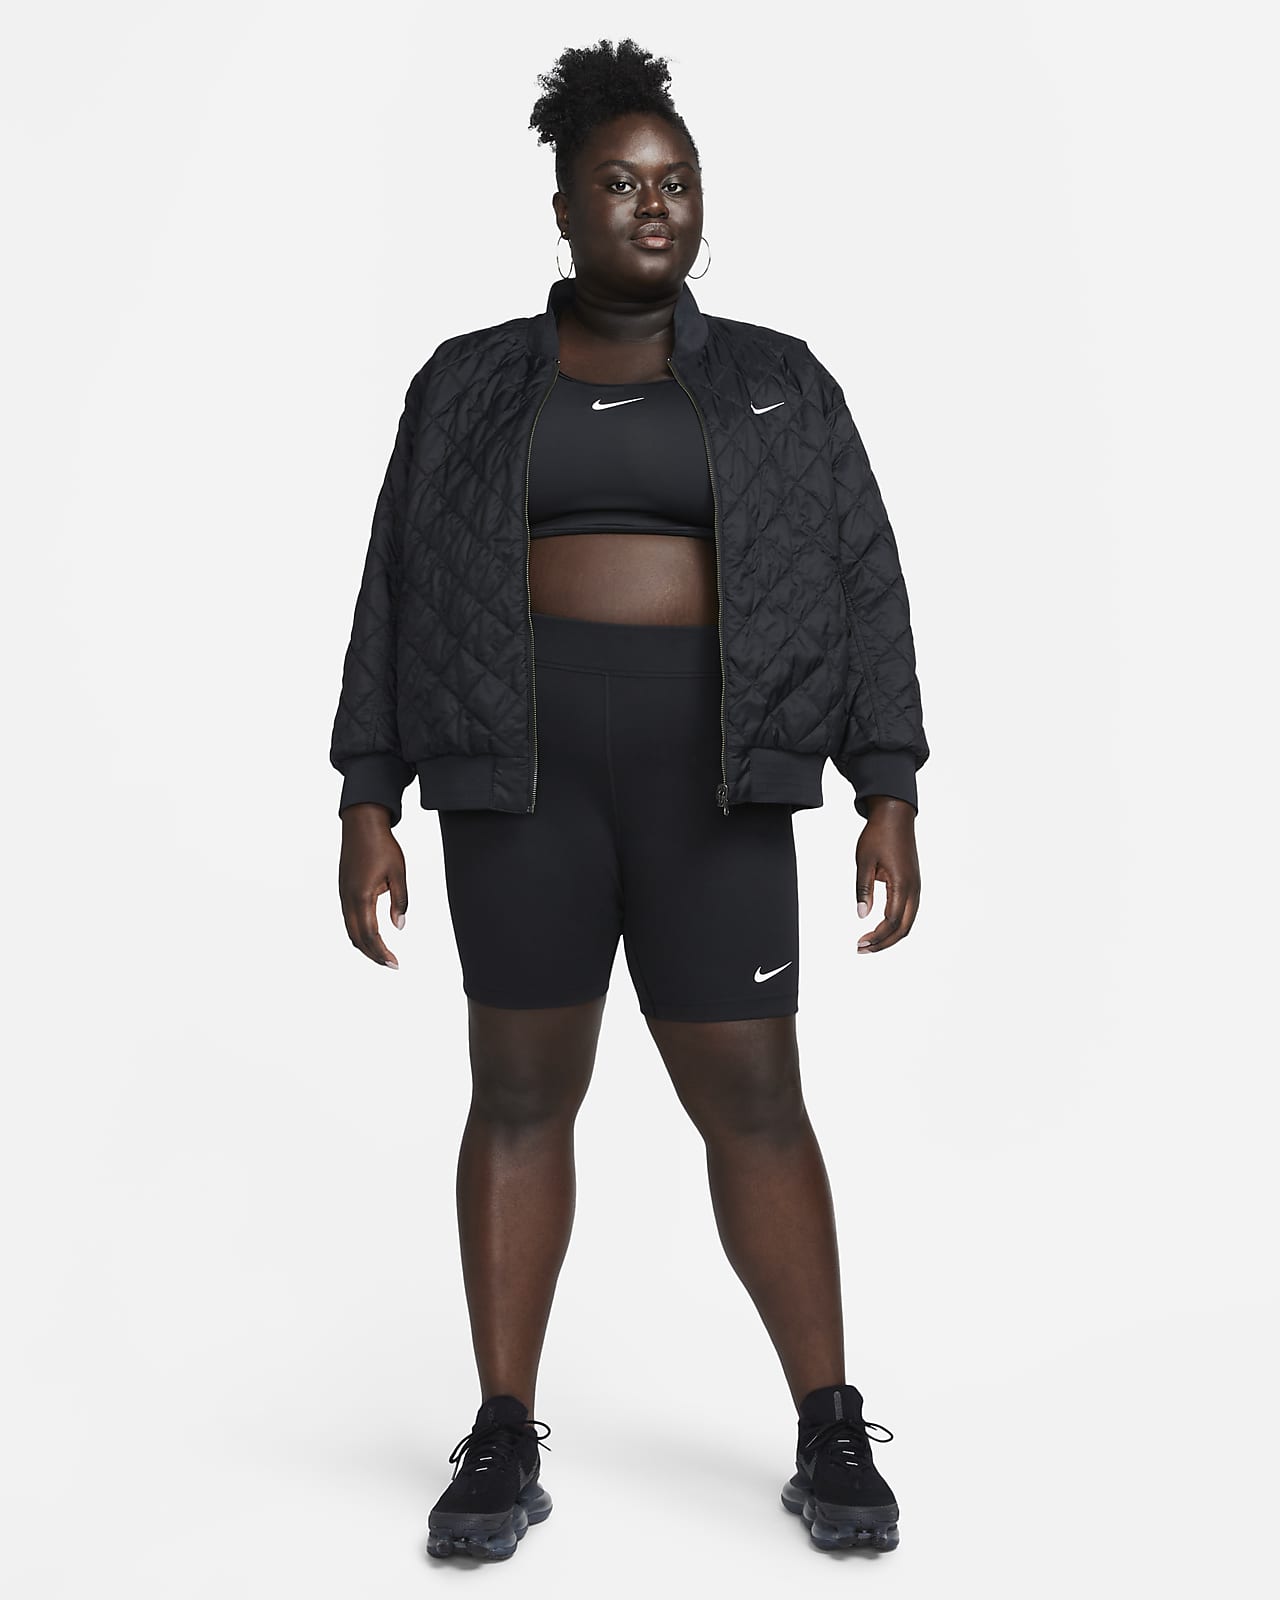 Nike Sportswear Classics-cykelshorts med høj talje cm) til kvinder (plus size).